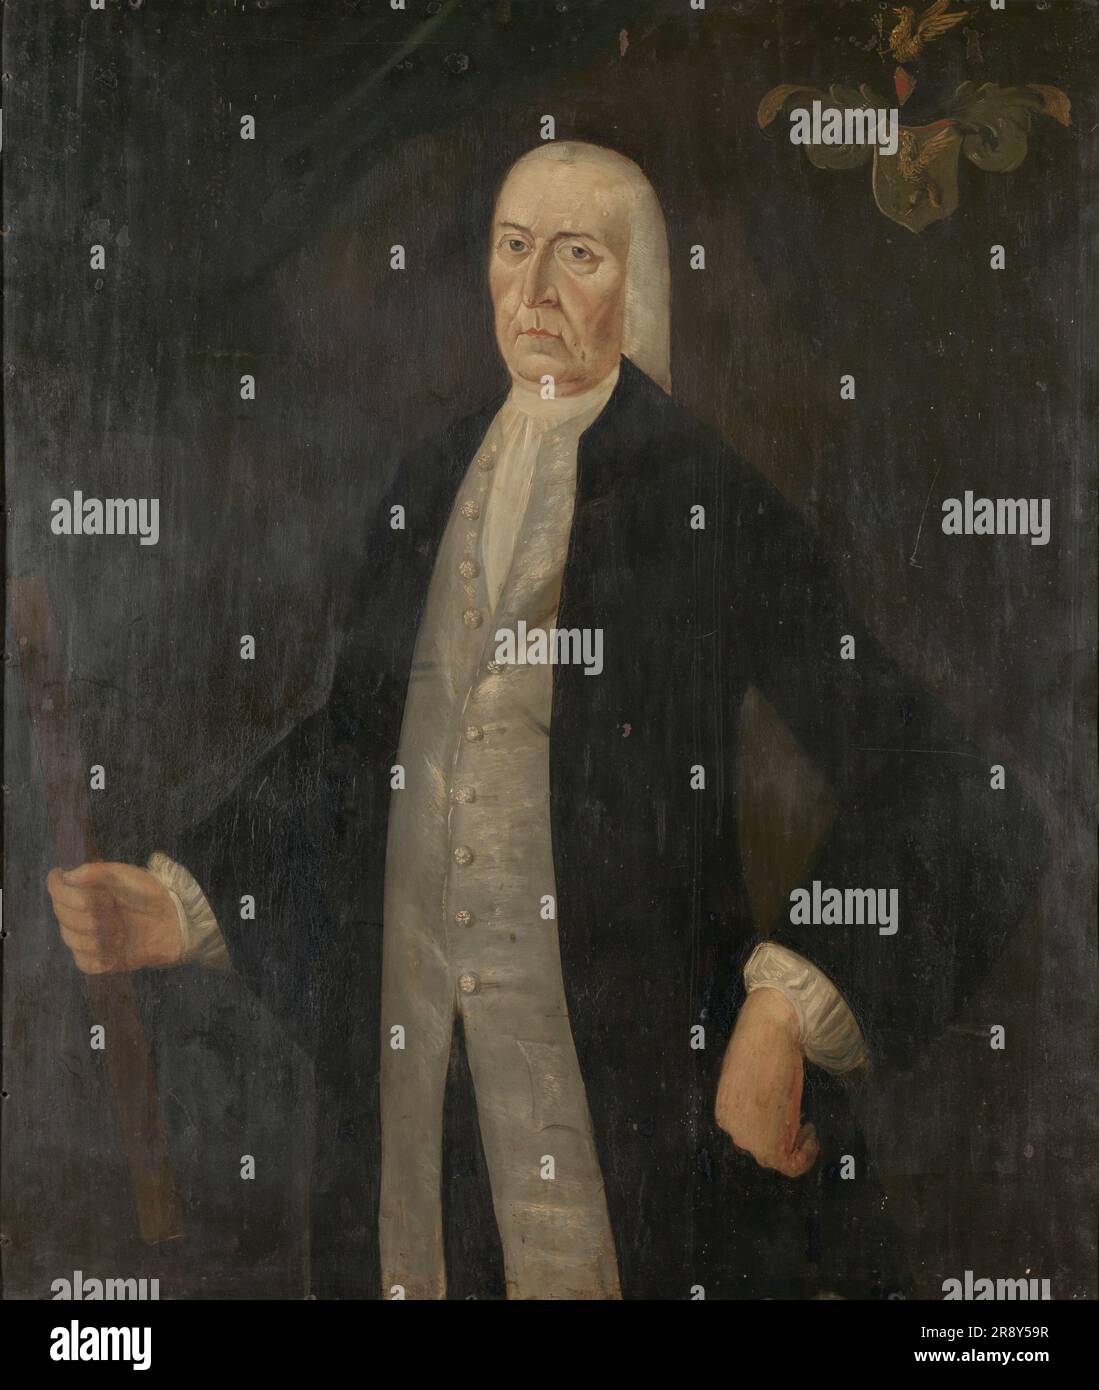 Ritratto di Jeremias van Riemsdijk, Governatore generale della compagnia olandese delle Indie orientali, 1775-1777. Foto Stock